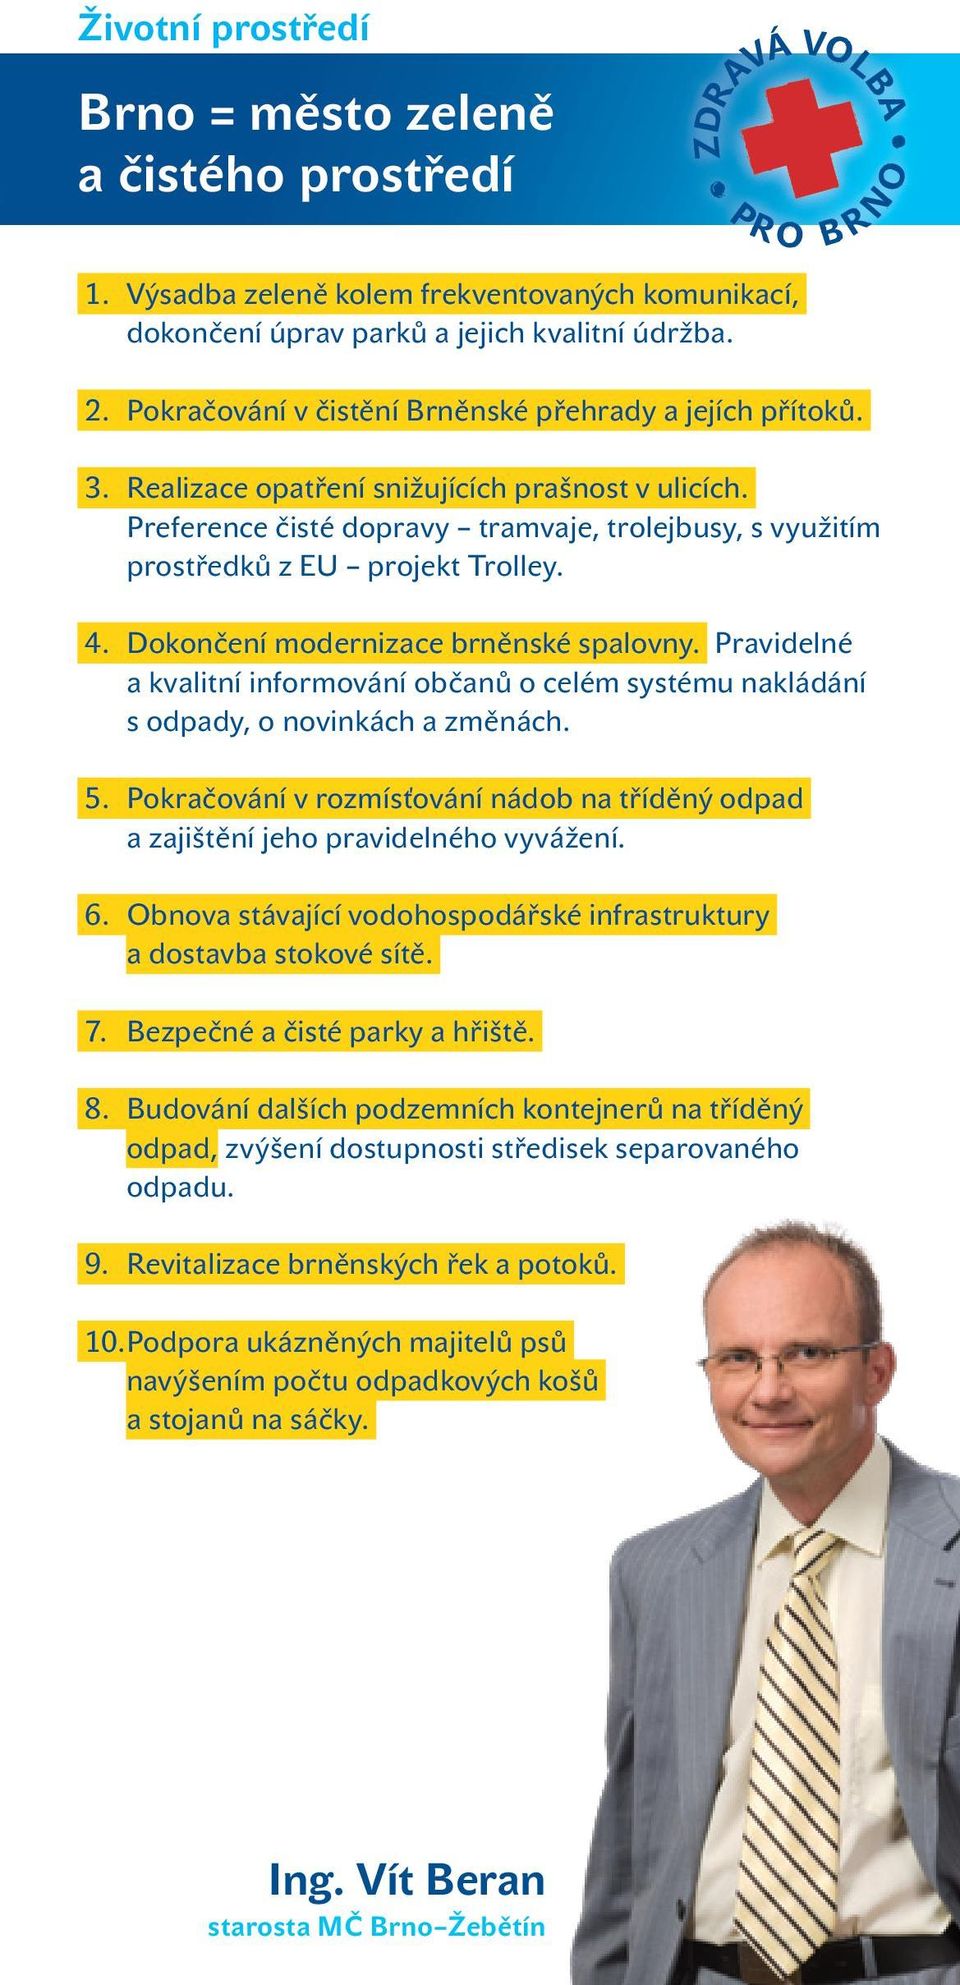 Preference čisté dopravy tramvaje, trolejbusy, s využitím prostředků z EU projekt Trolley. 4. Dokončení modernizace brněnské spalovny.